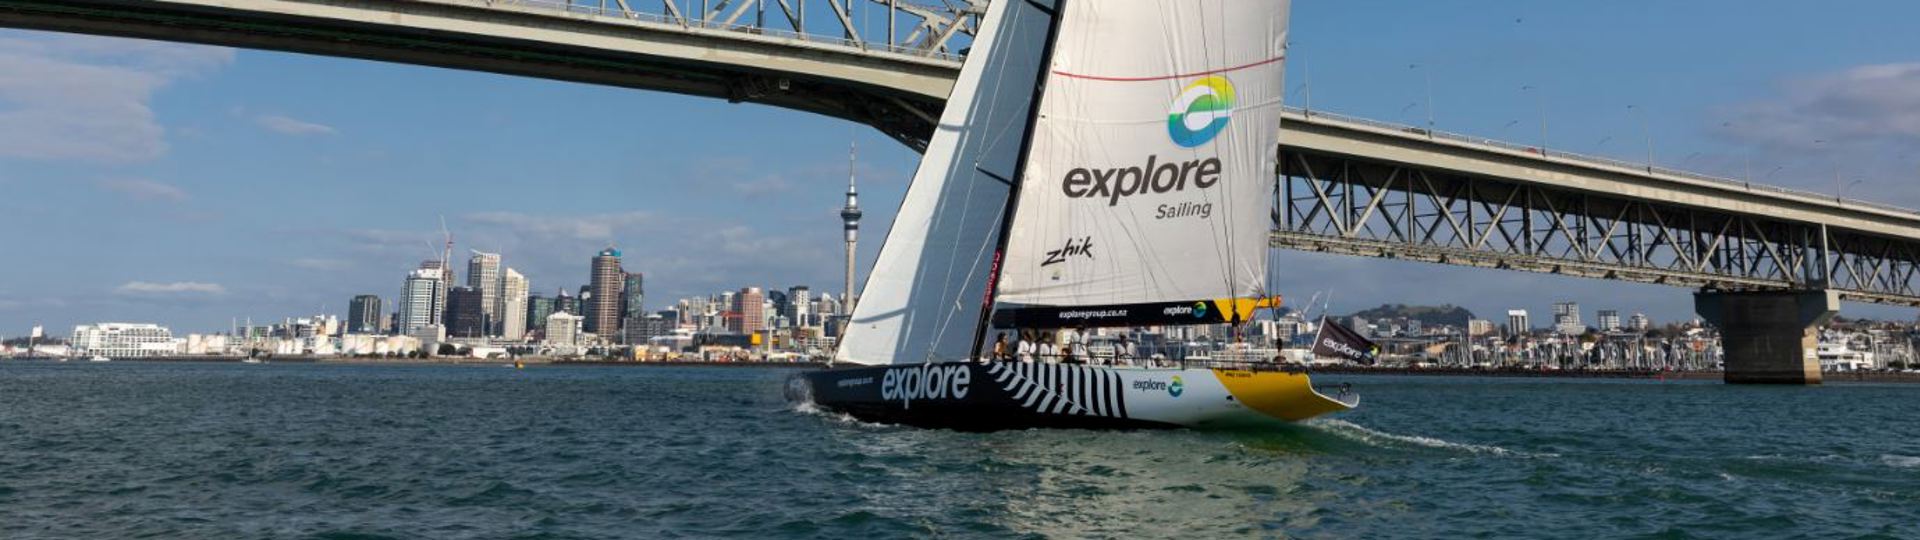 AC68 sailing under the Auckland Harbour Bridge